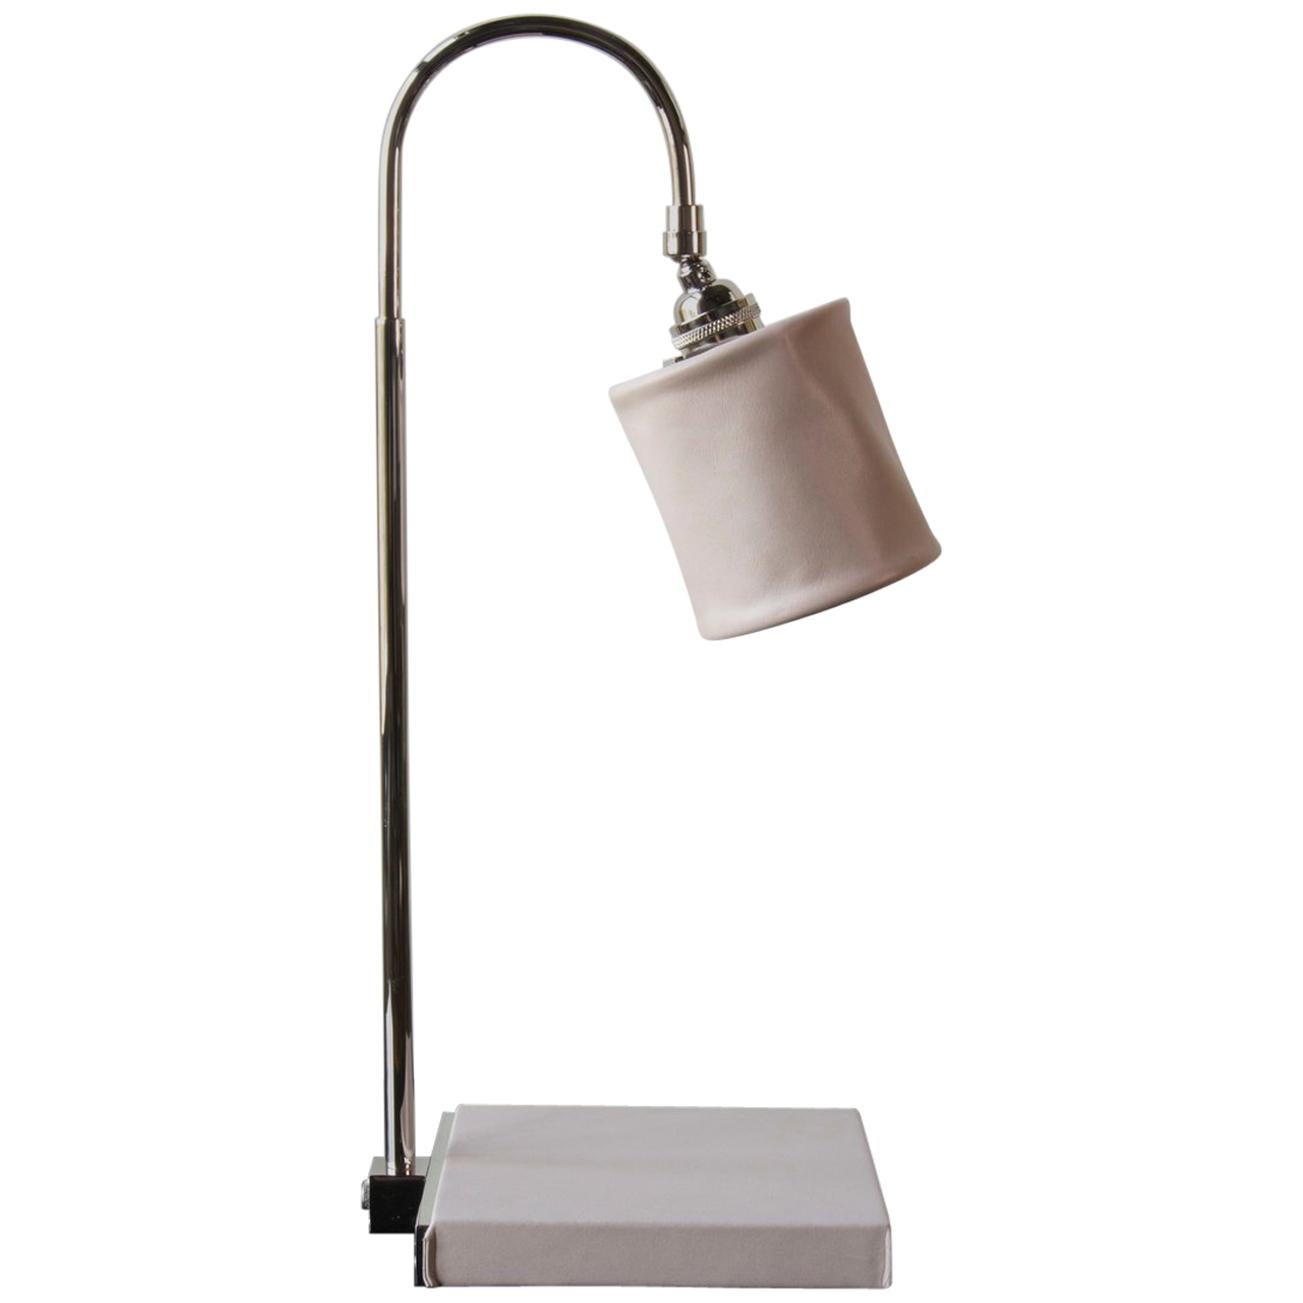 Lampe de bureau Series01, cuir rose poudré teinté à la main, laiton nickelé poli